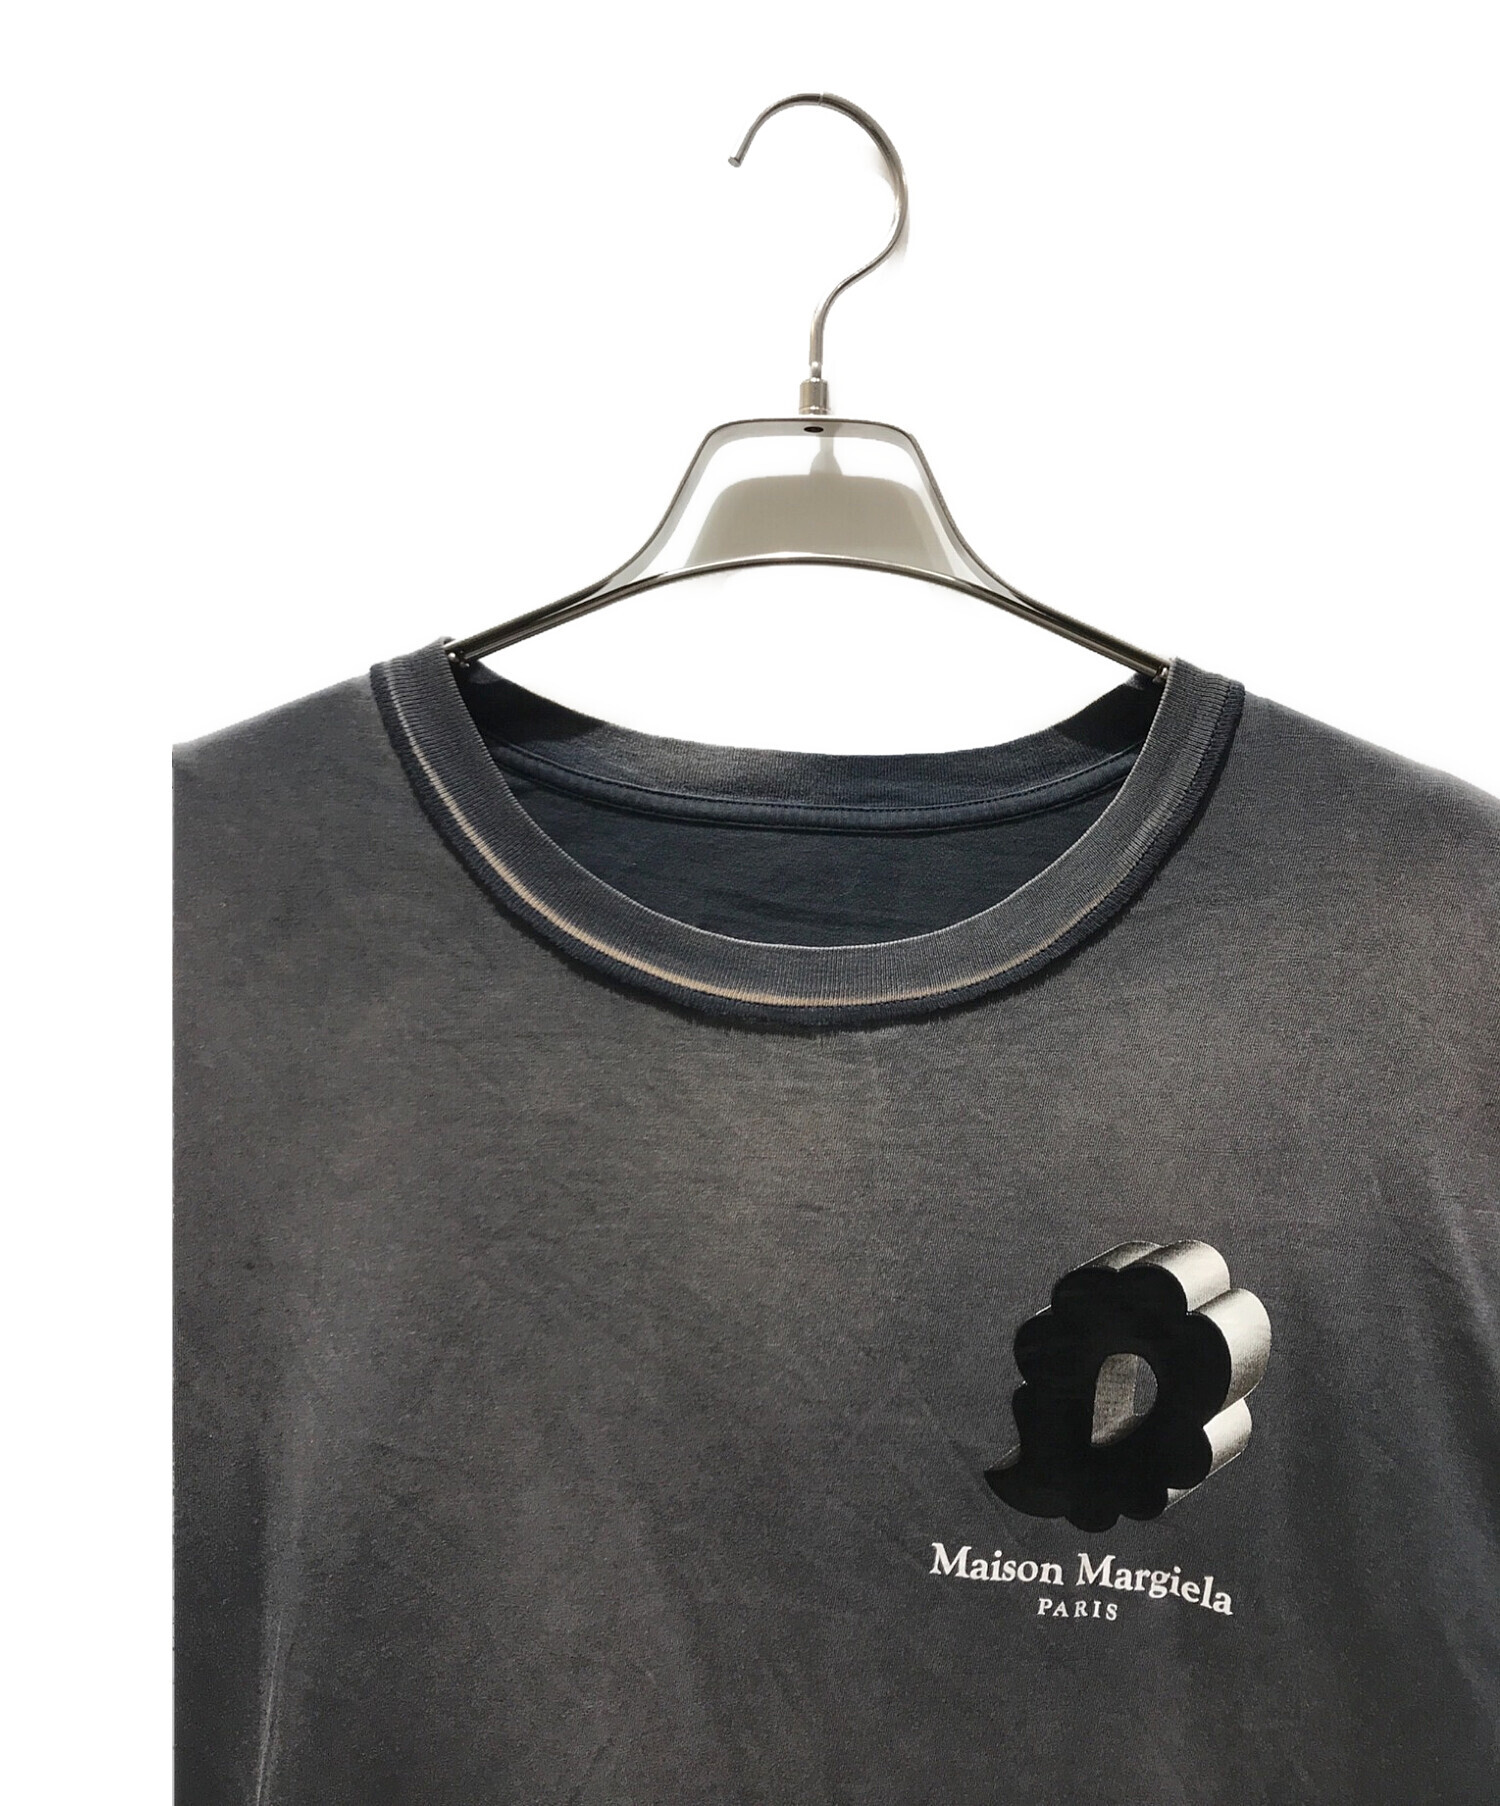 Maison Margiela (メゾンマルジェラ) オーバーサイズ ウォッシュド バブル ロゴTシャツ　 ダメージ加工 グレー サイズ:M